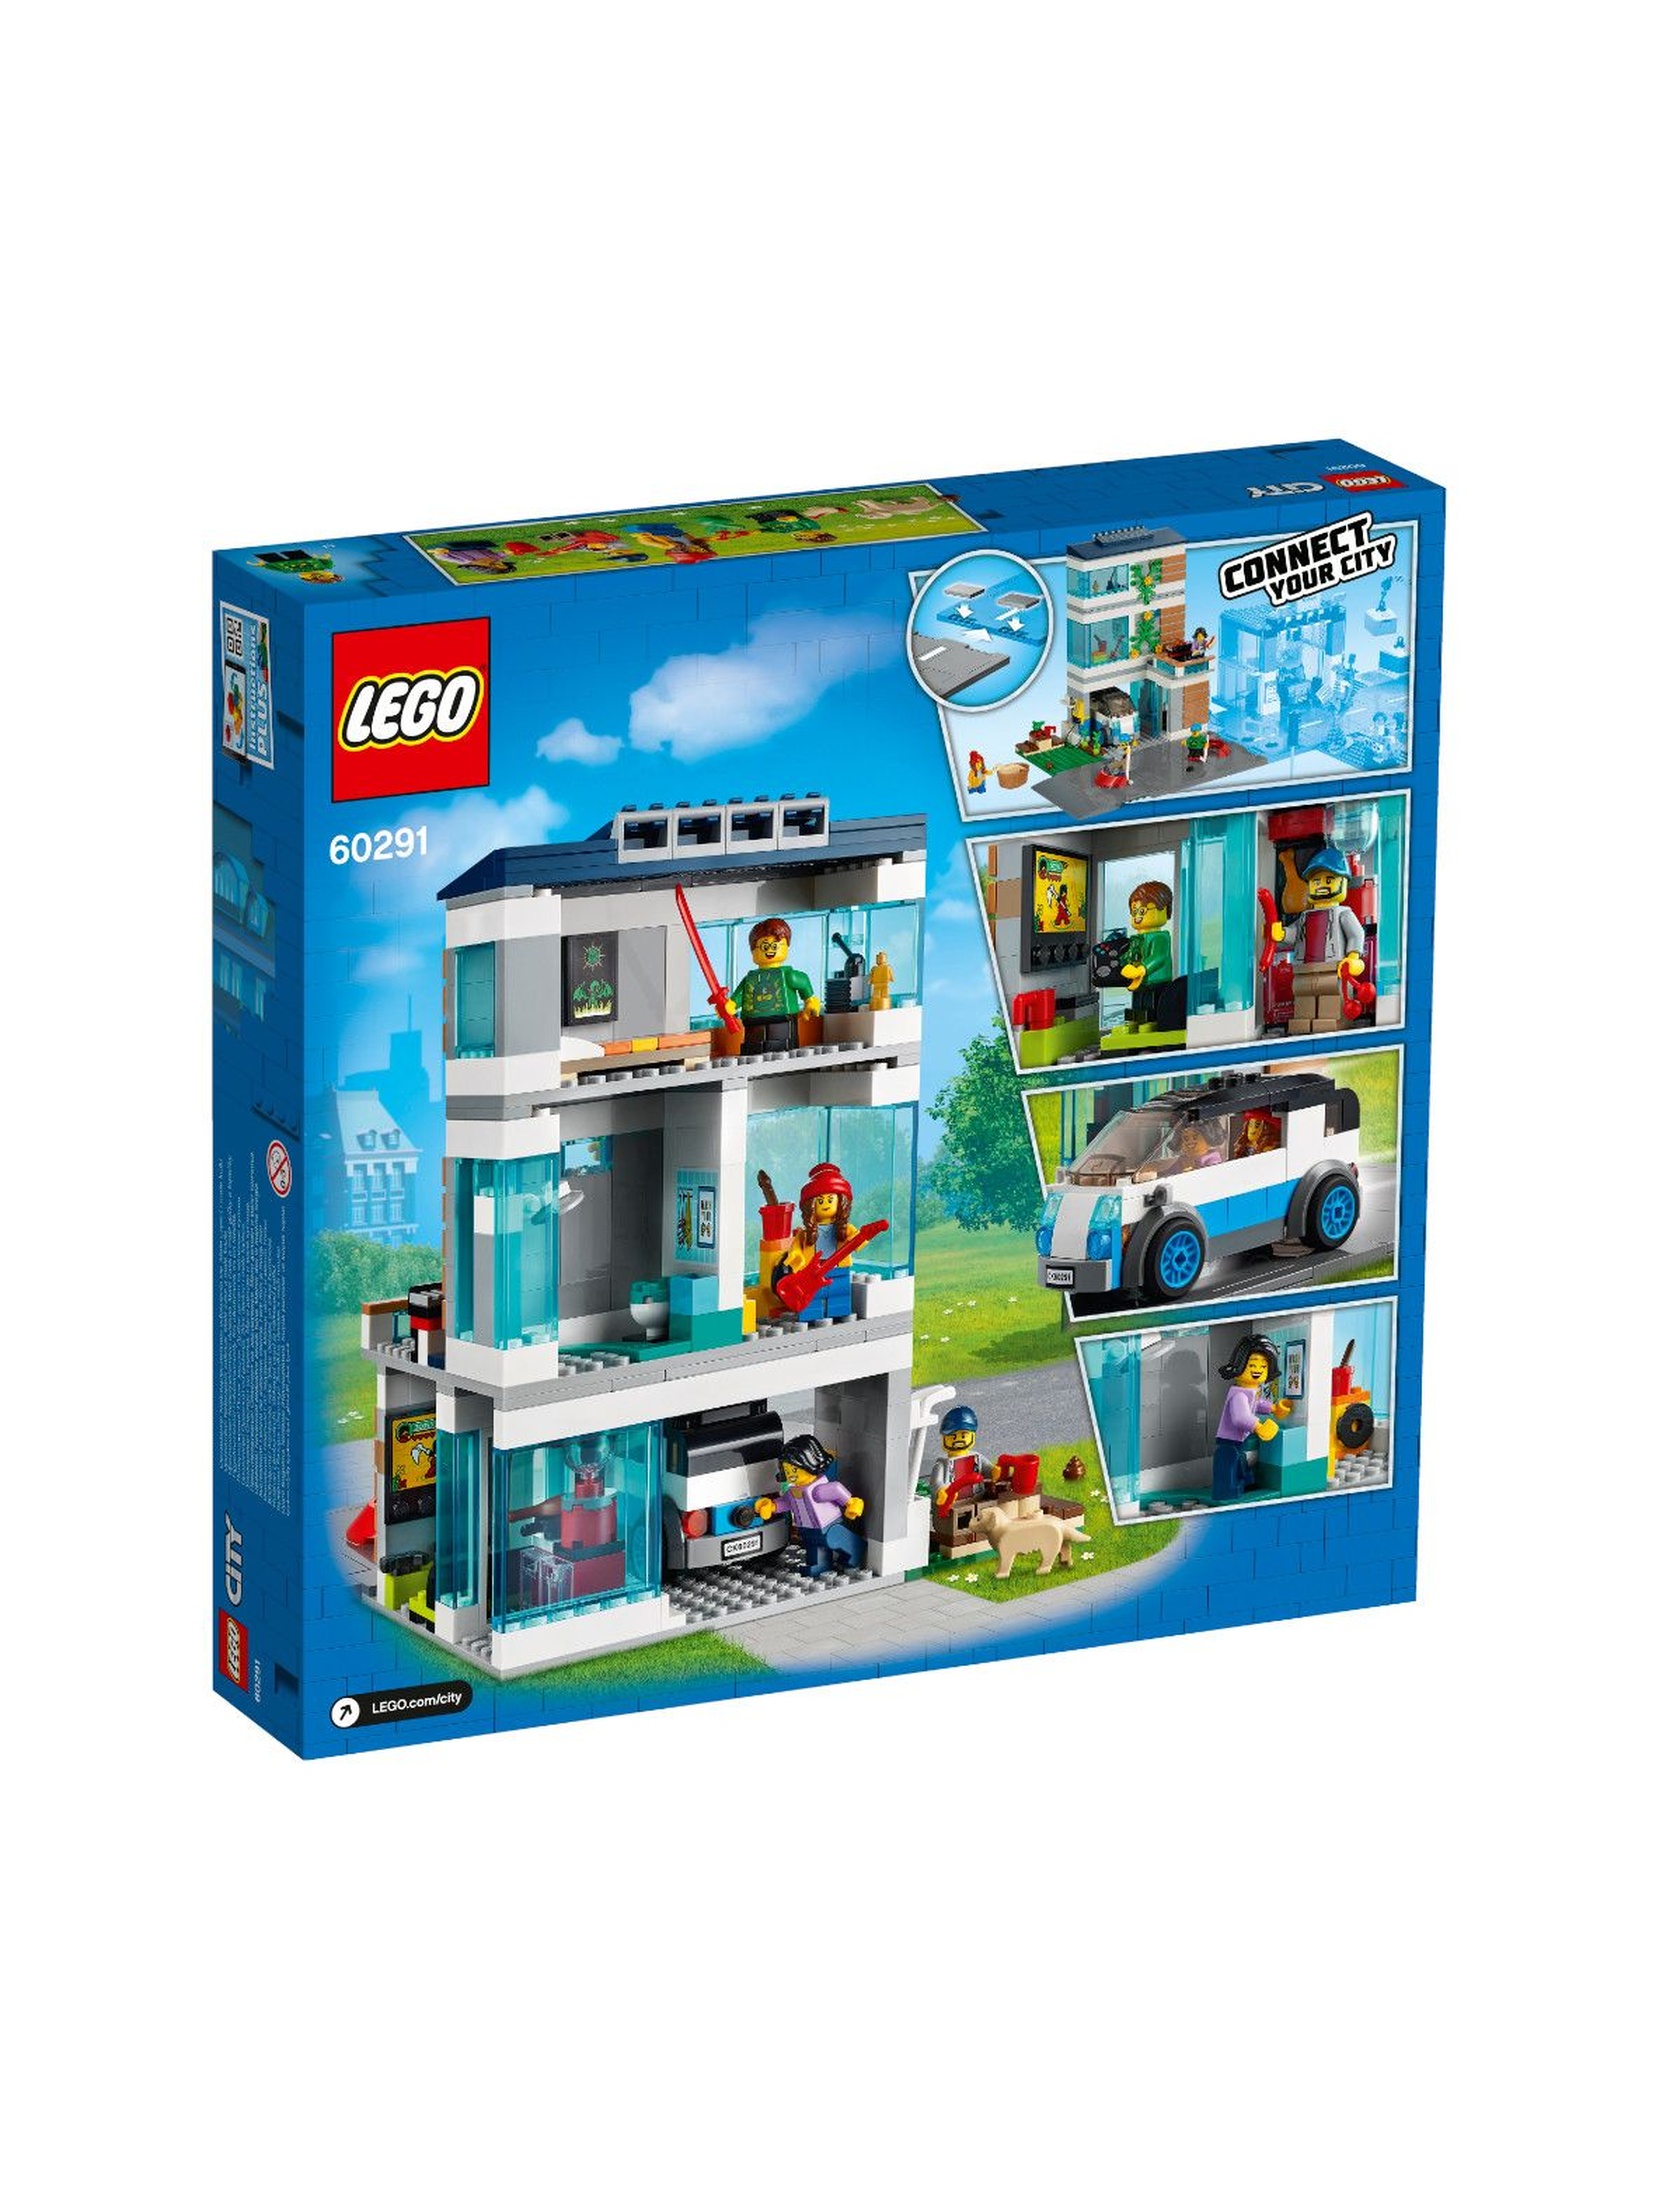 LEGO City - Dom rodzinny - 388 elementów